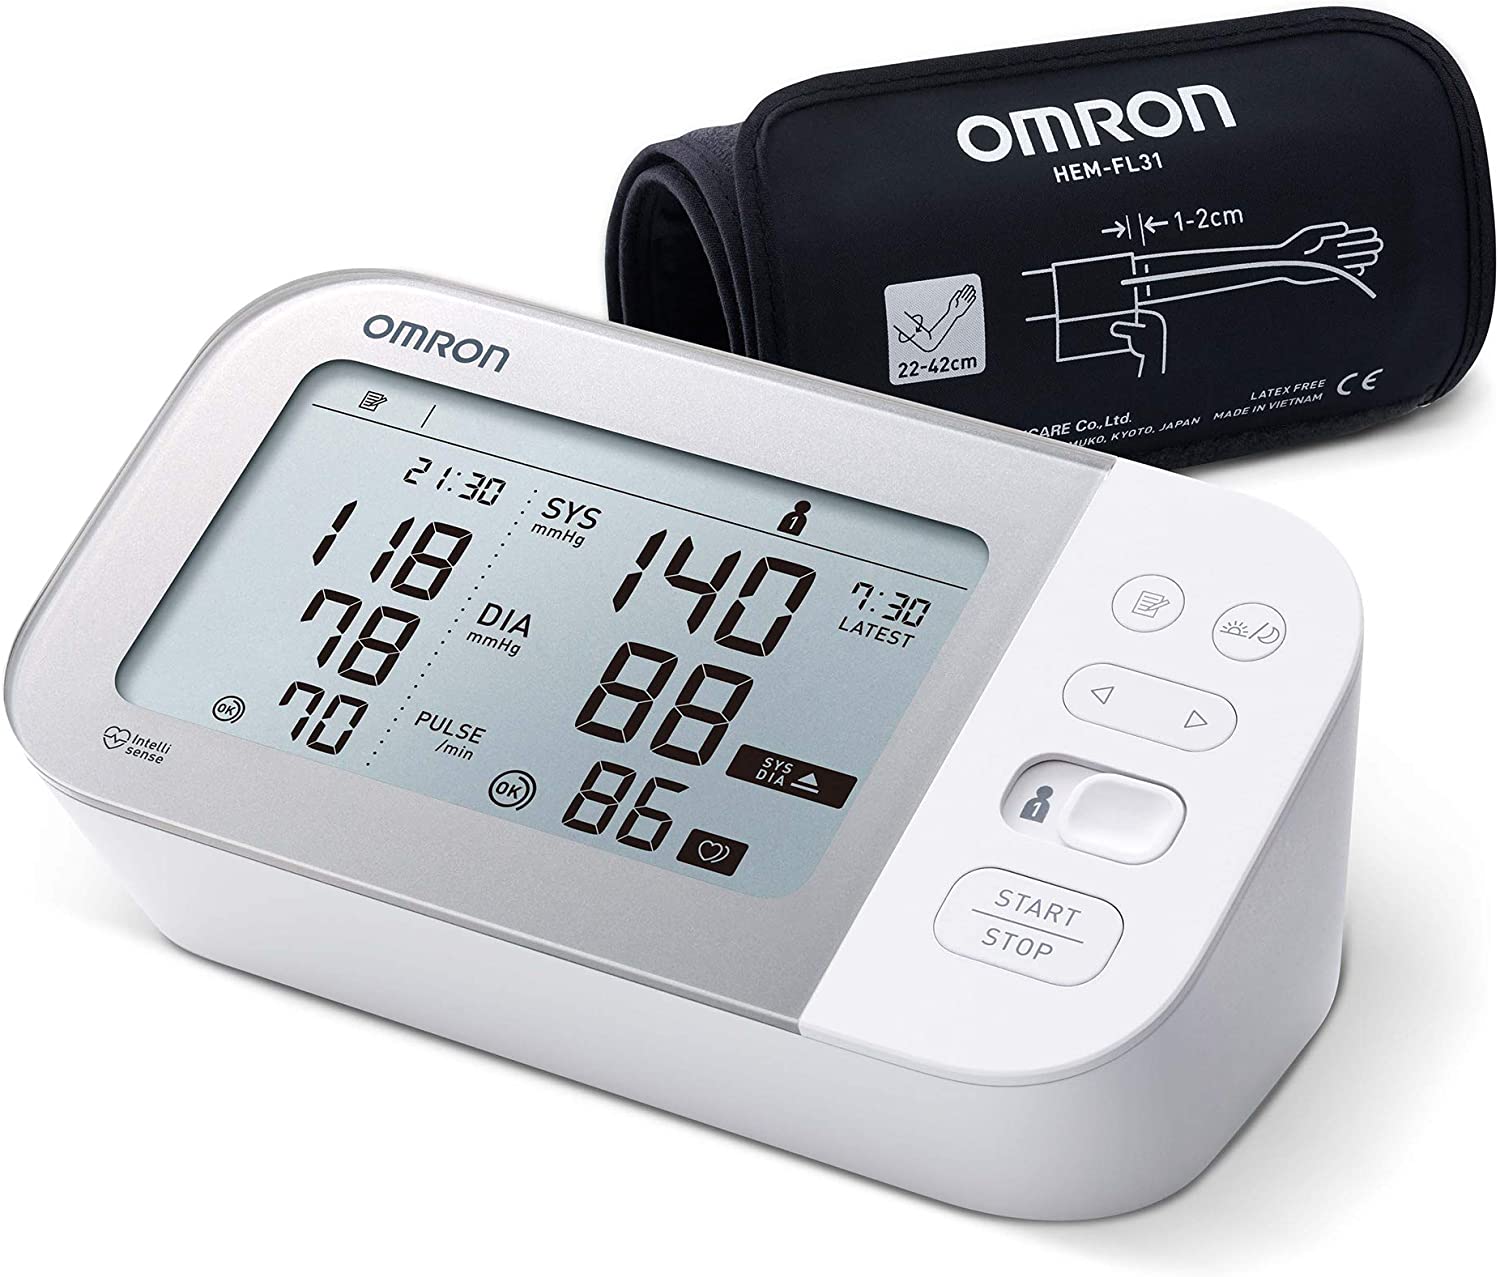 Omron M7 Intelli IT felkaros okos vérnyomásmérő - Fehér/Ezüst (HEM-7361T)